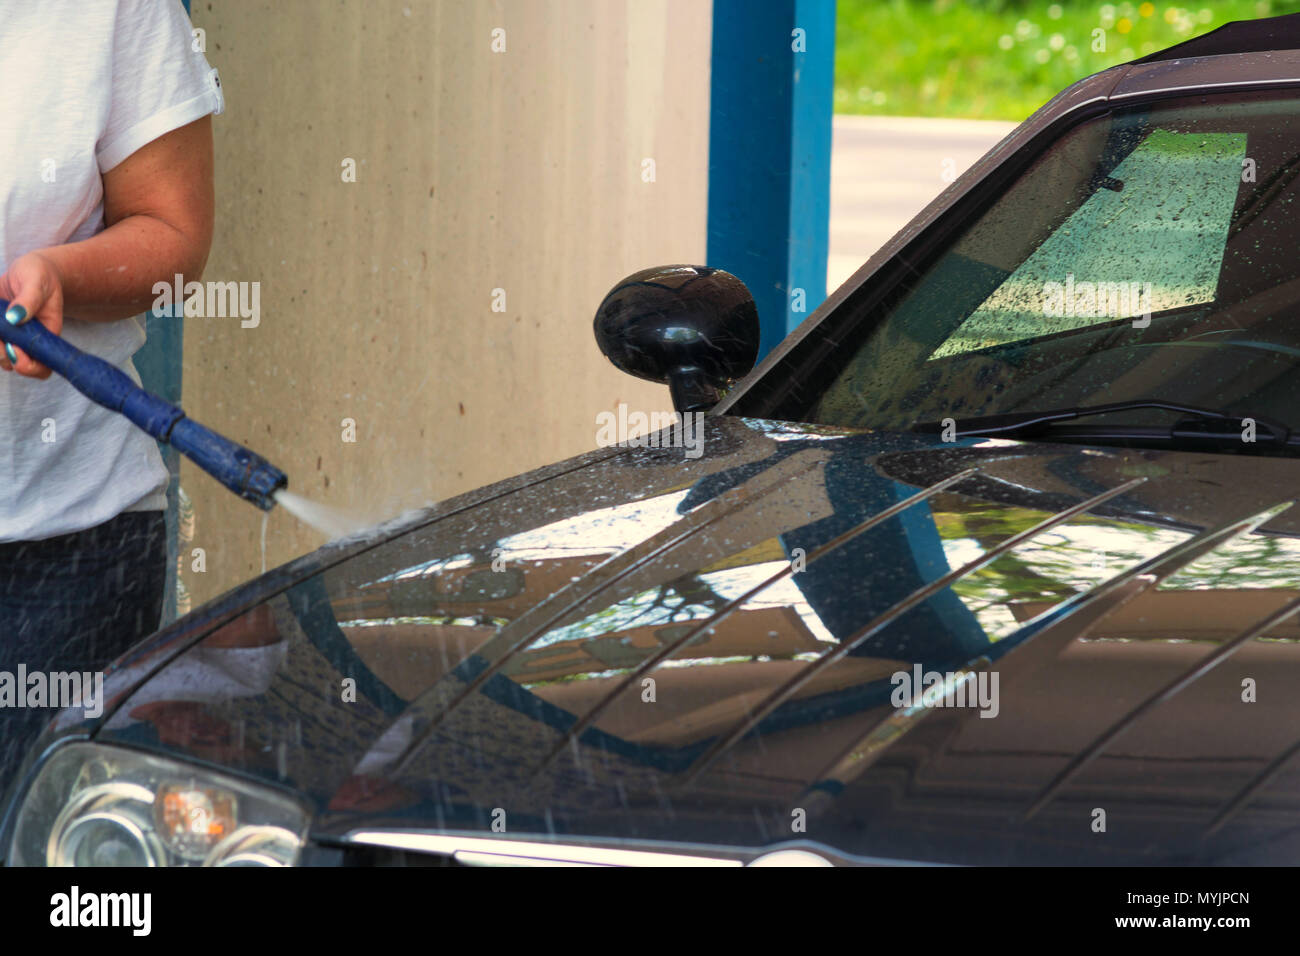 Auto sauber machen mit einem Hochdruckreiniger. Foto de stock